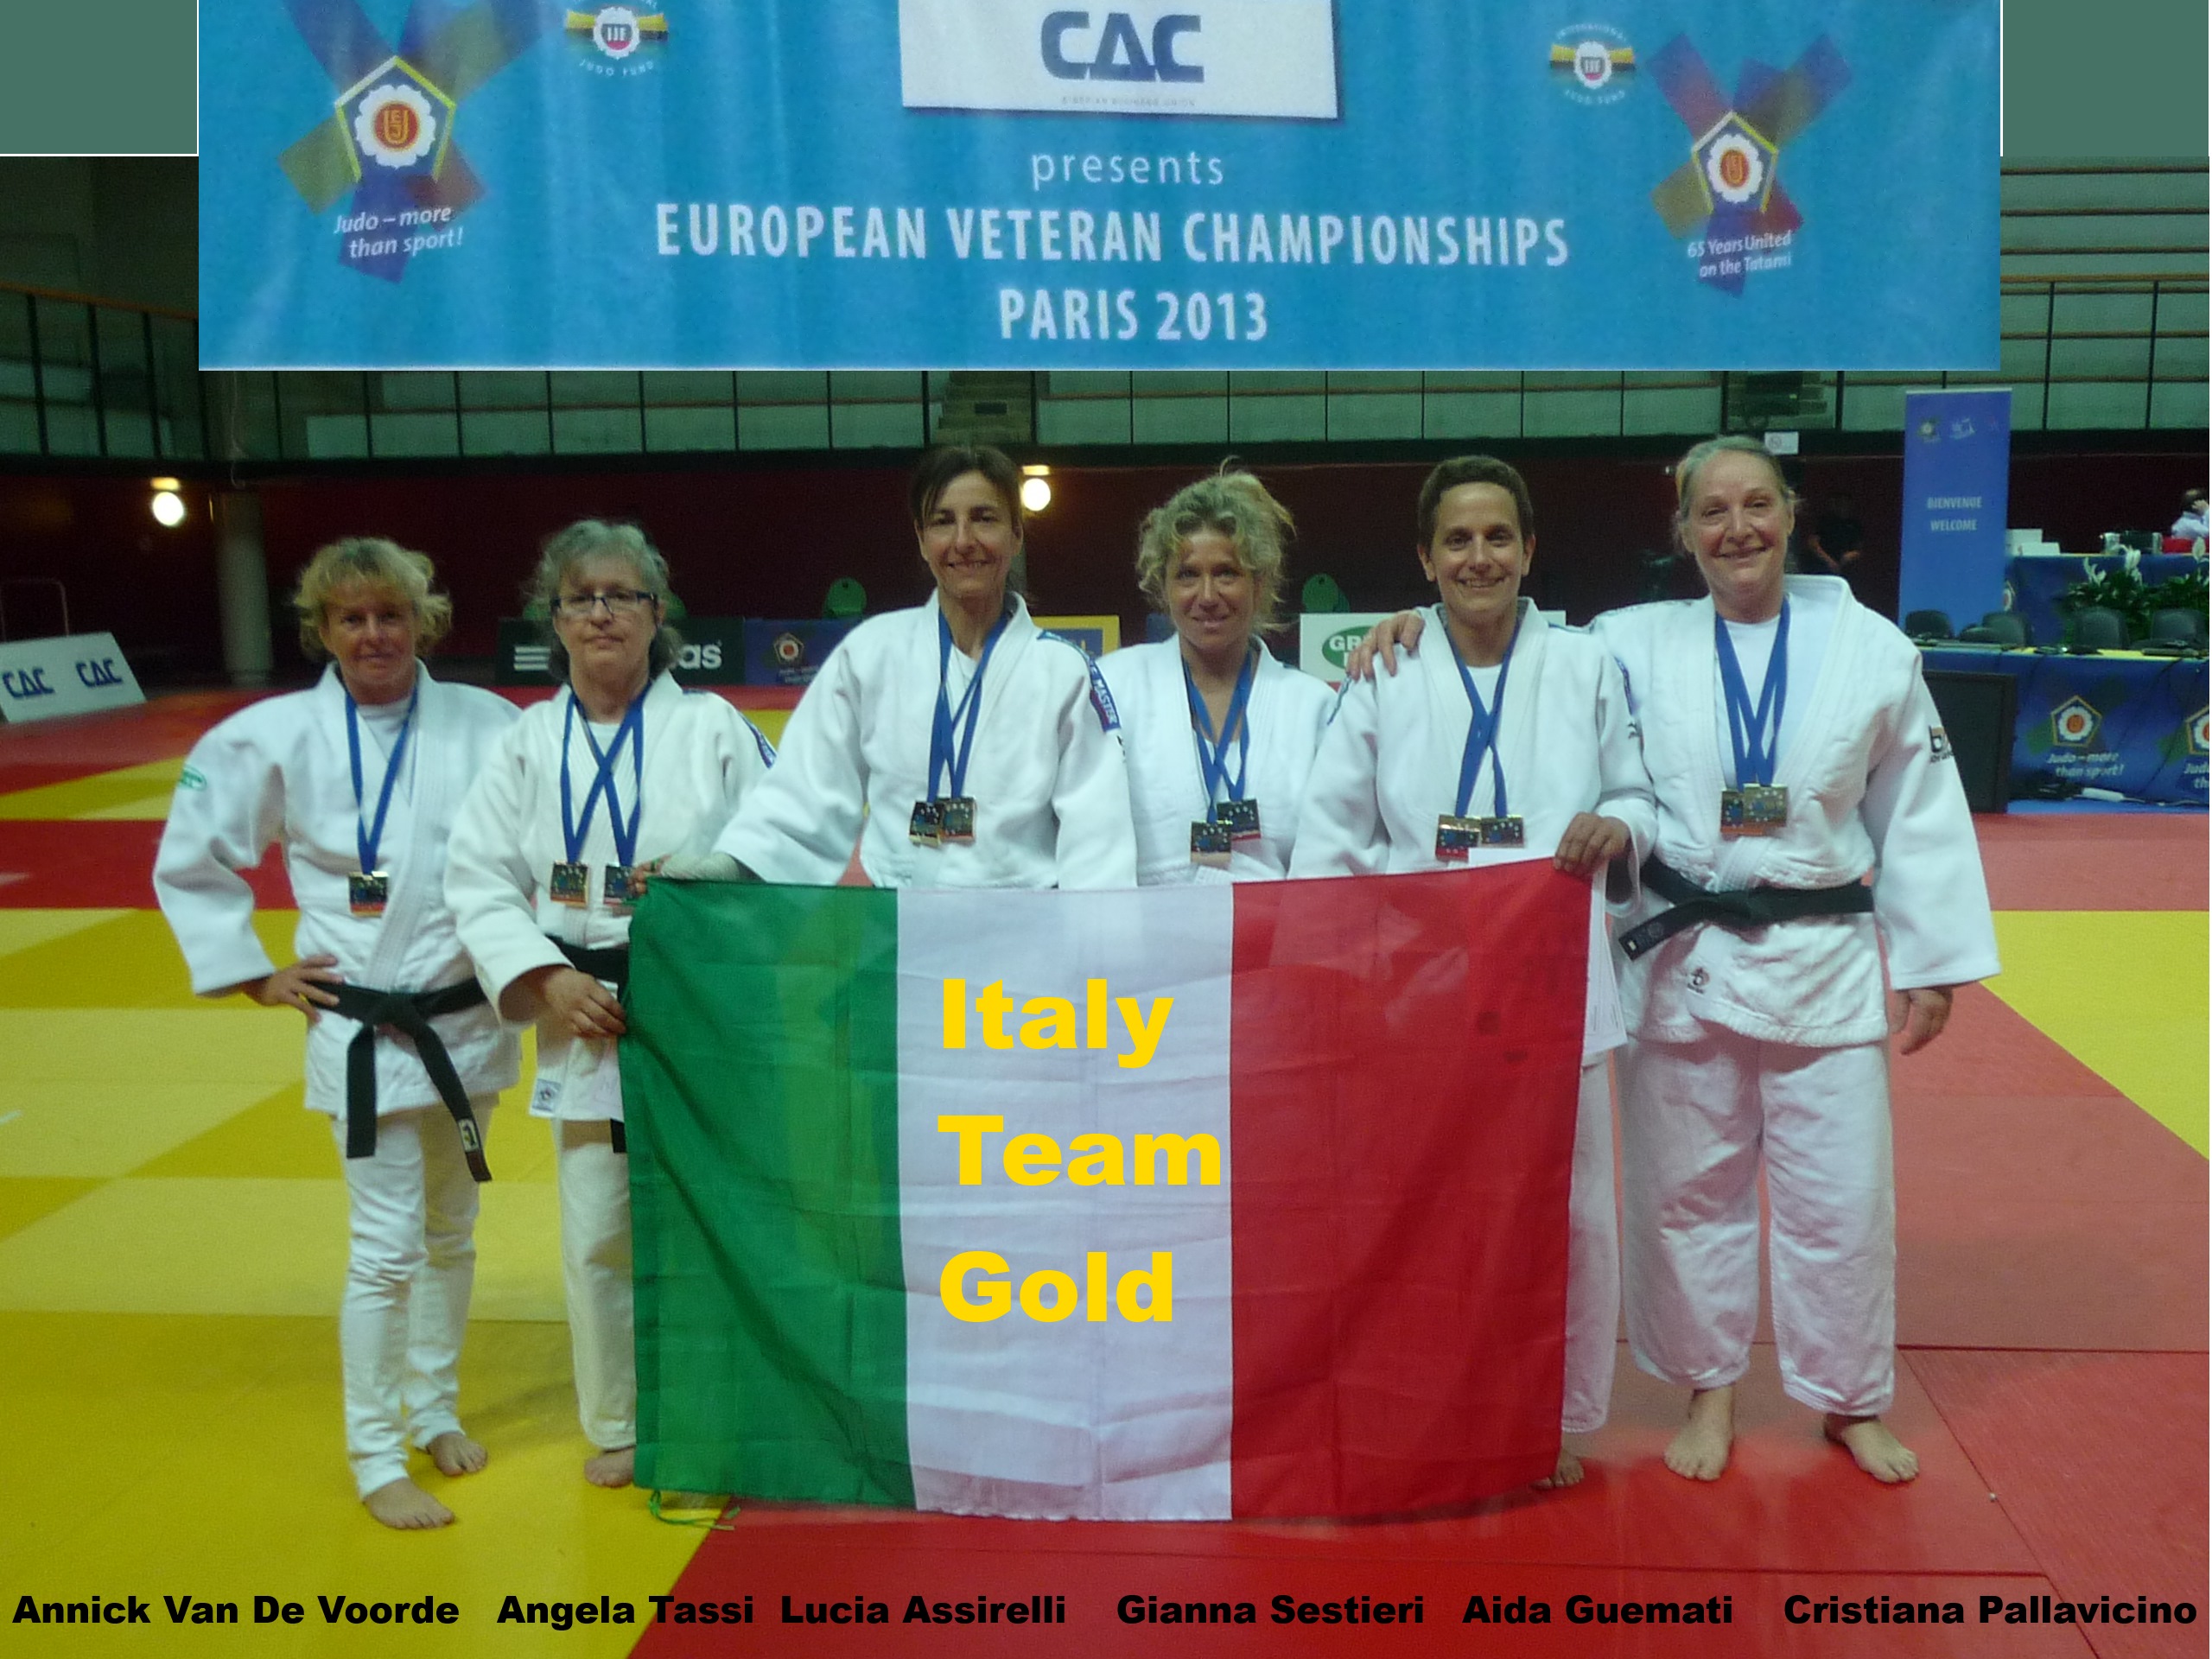 /immagini/Judo/2013/13 06 16 European Judo Championship Paris Italy Team Gold.jpg